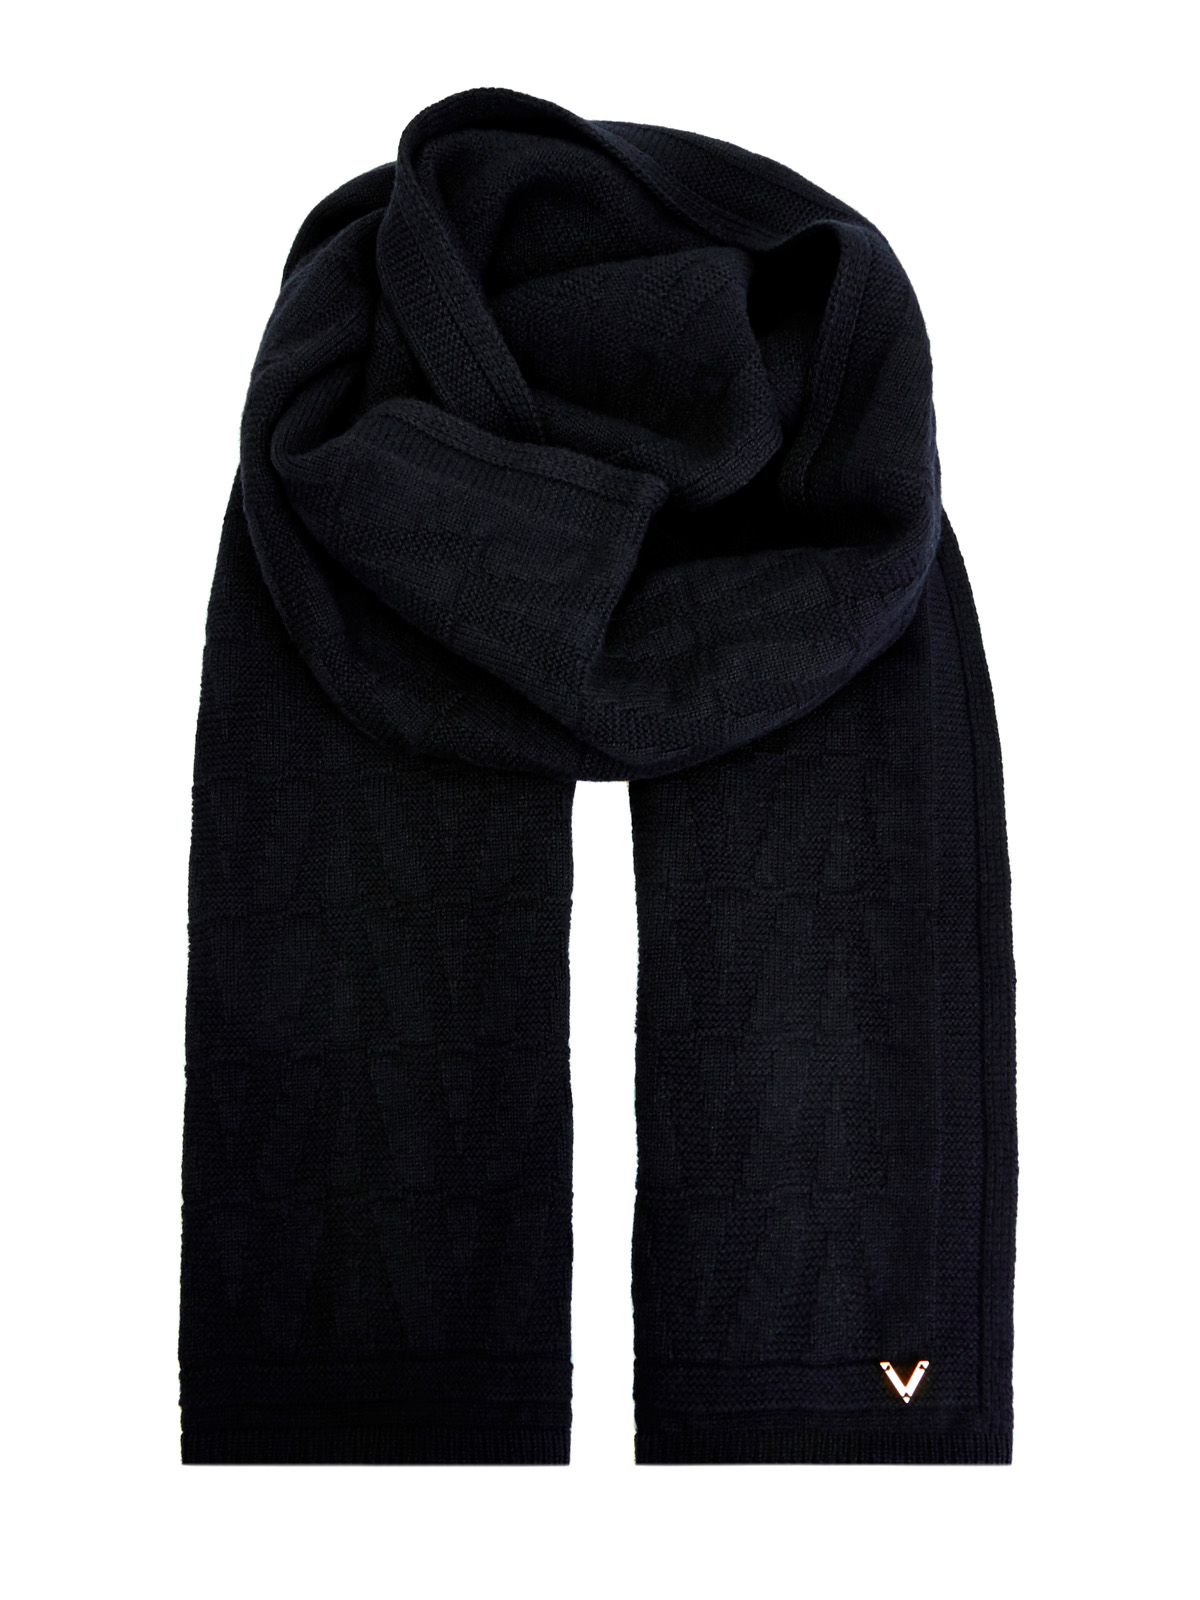 Вязаный шарф из шерсти и кашемира с литой символикой VALENTINO GARAVANI, цвет черный, размер 36;36.5;37;37.5;38;38.5;39;40;41;39.5